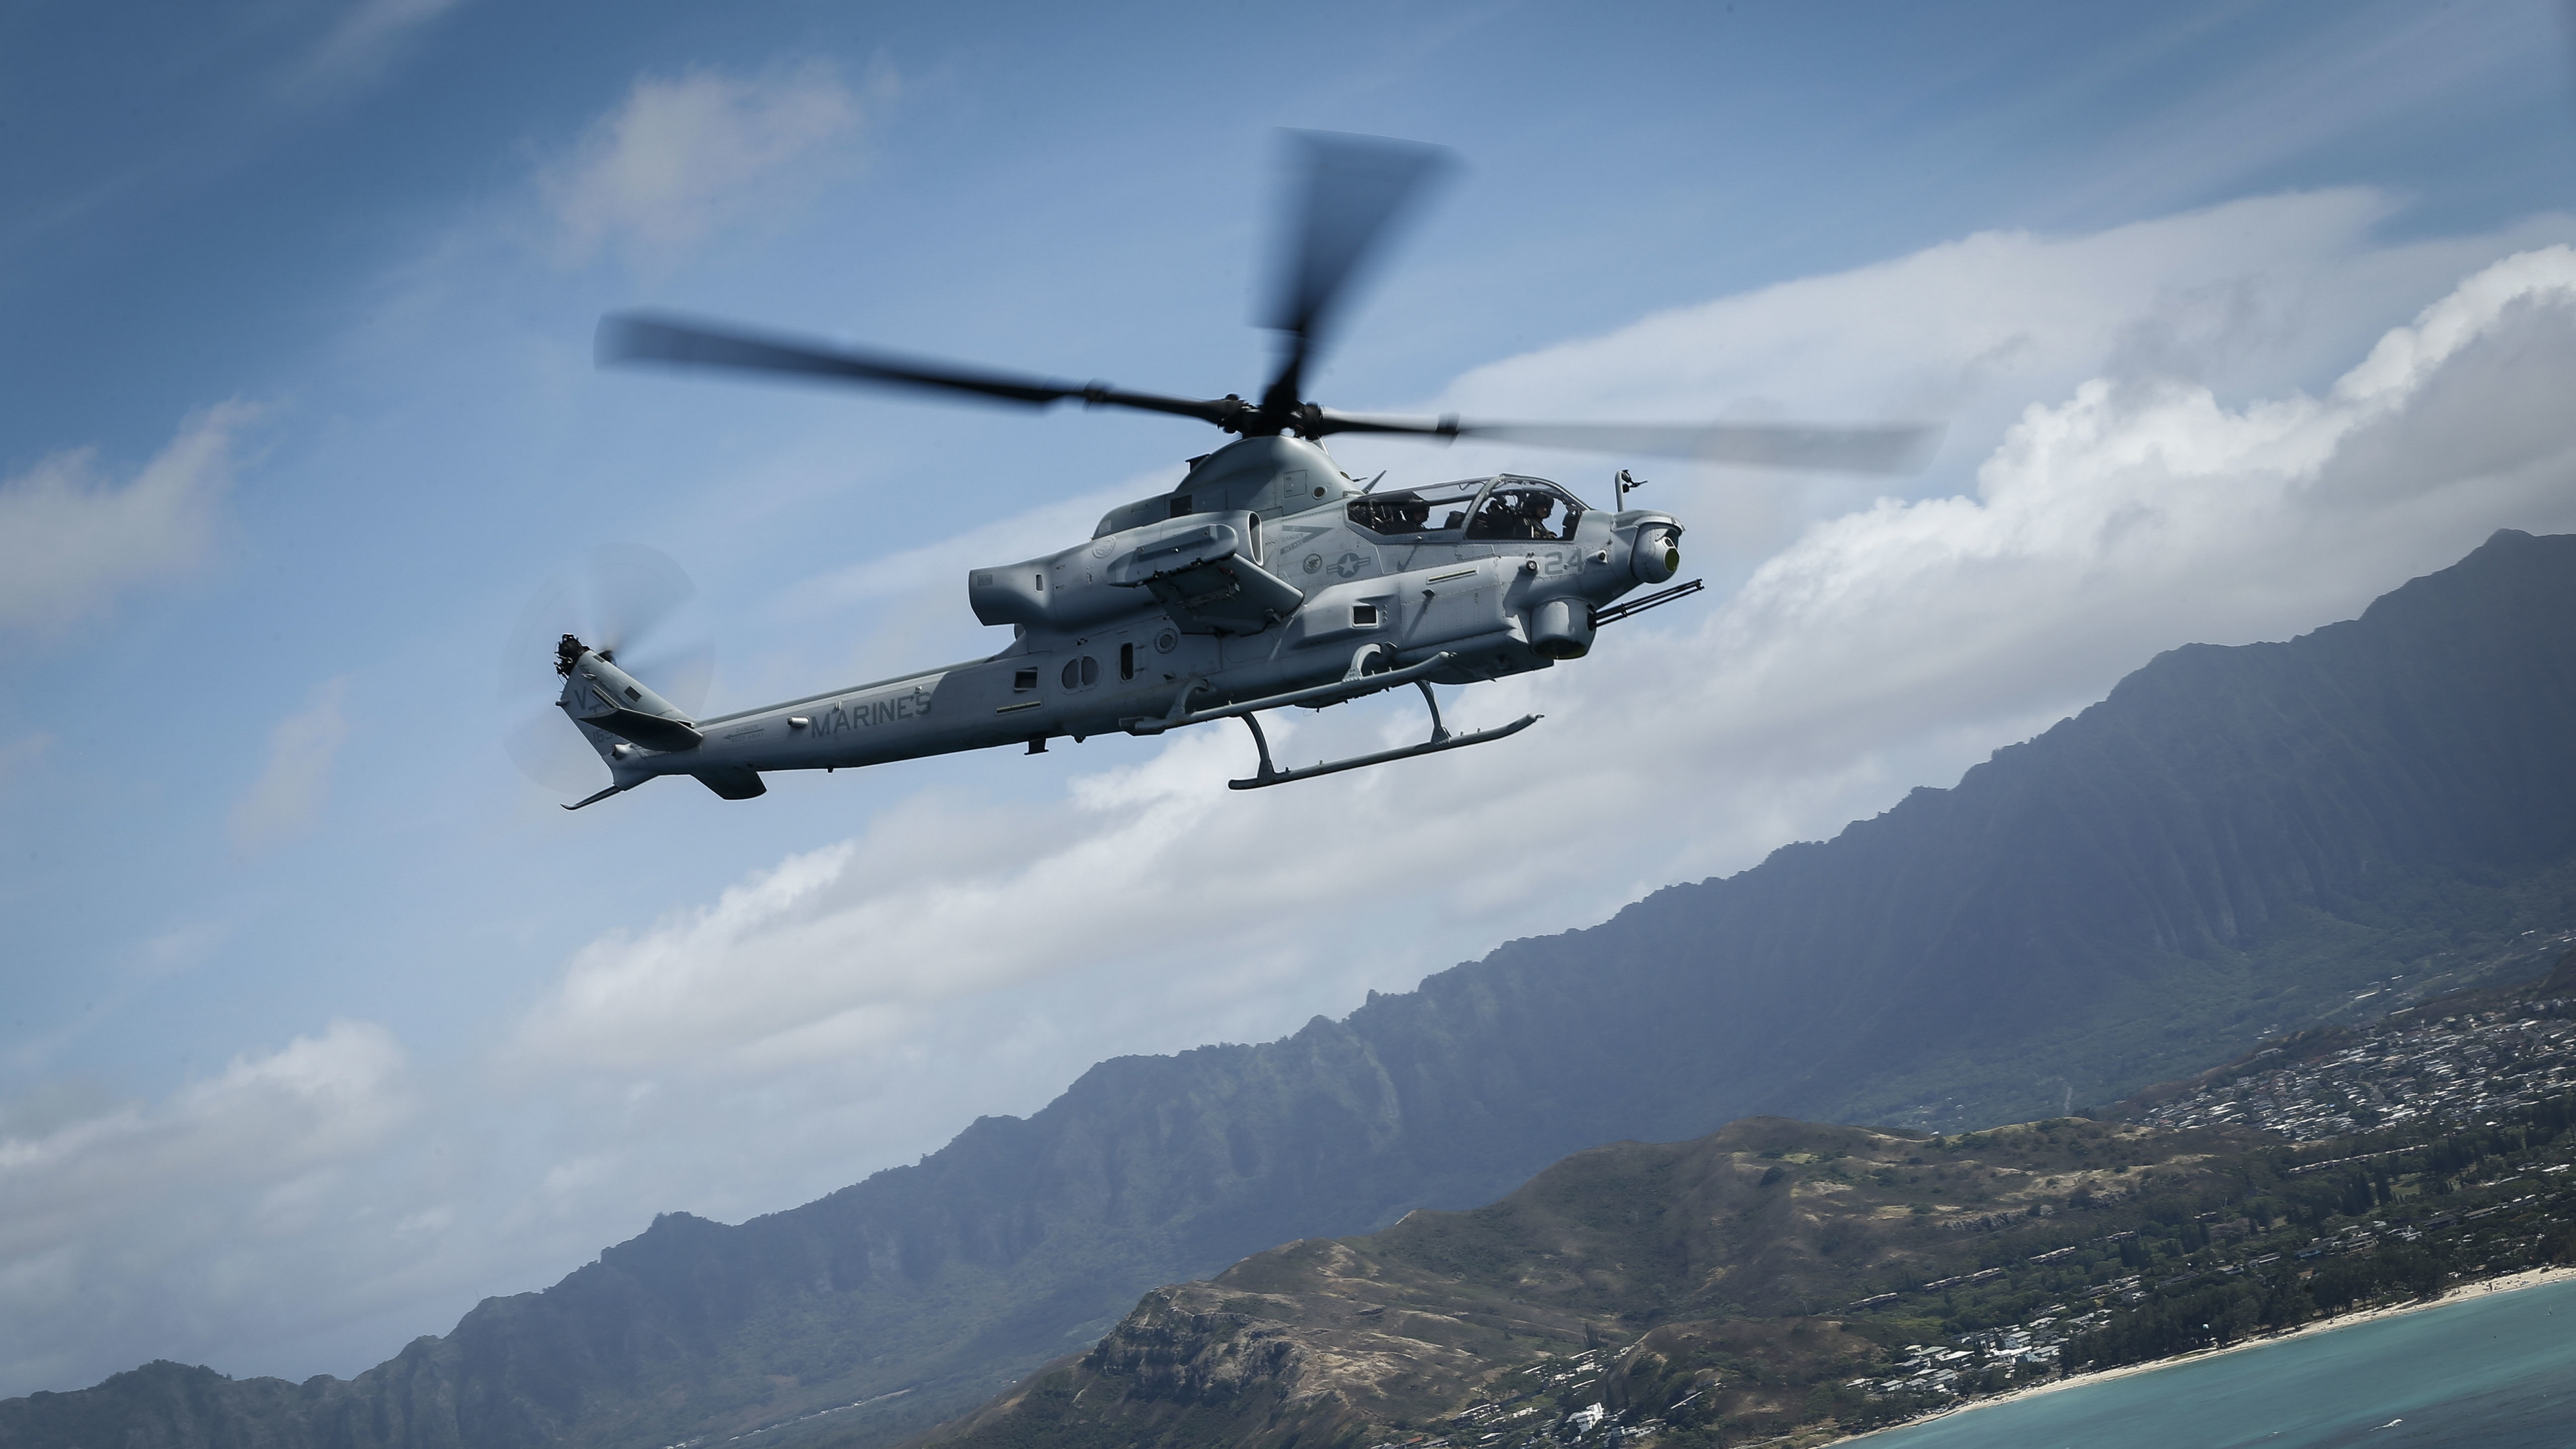 Helicóptero Blanco y Negro Sobrevolando la Montaña Durante el Día. Wallpaper in 3840x2160 Resolution